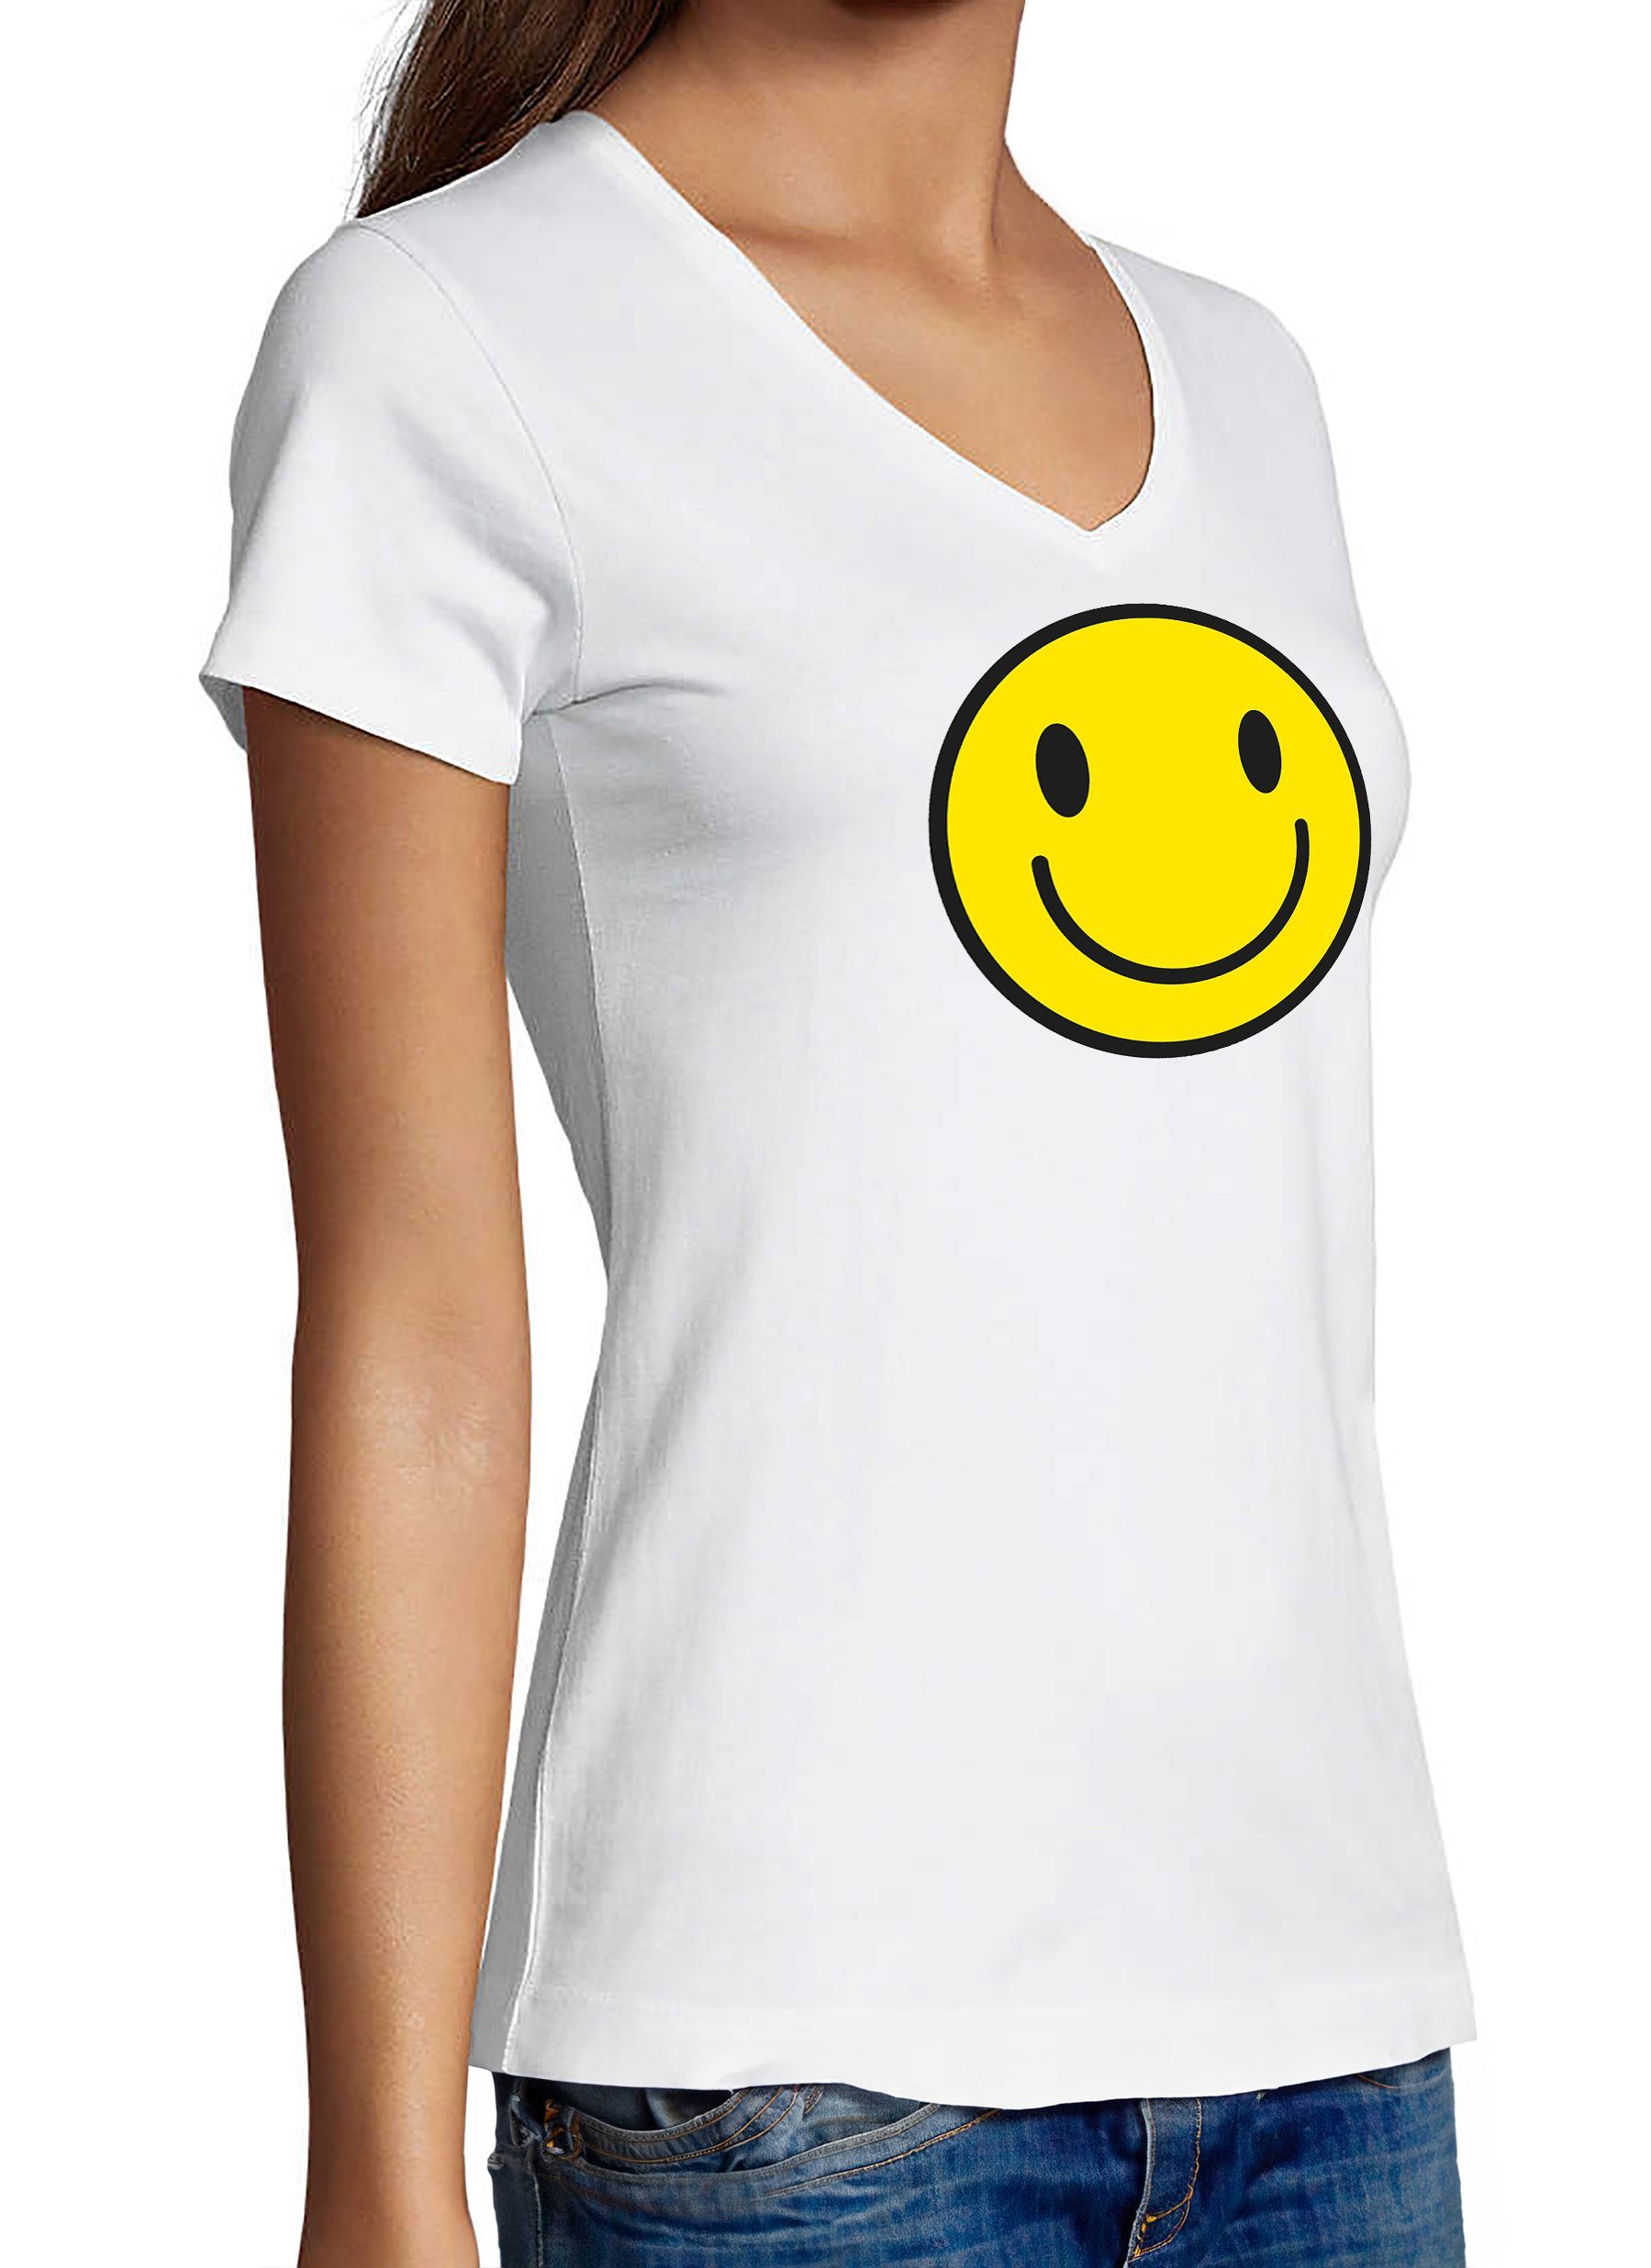 MyDesign24 T-Shirt Damen Smiley - Lächelnder Smiley Baumwollshirt Fit, weiss i281 Slim Aufdruck Print mit V-Ausschnitt Shirt